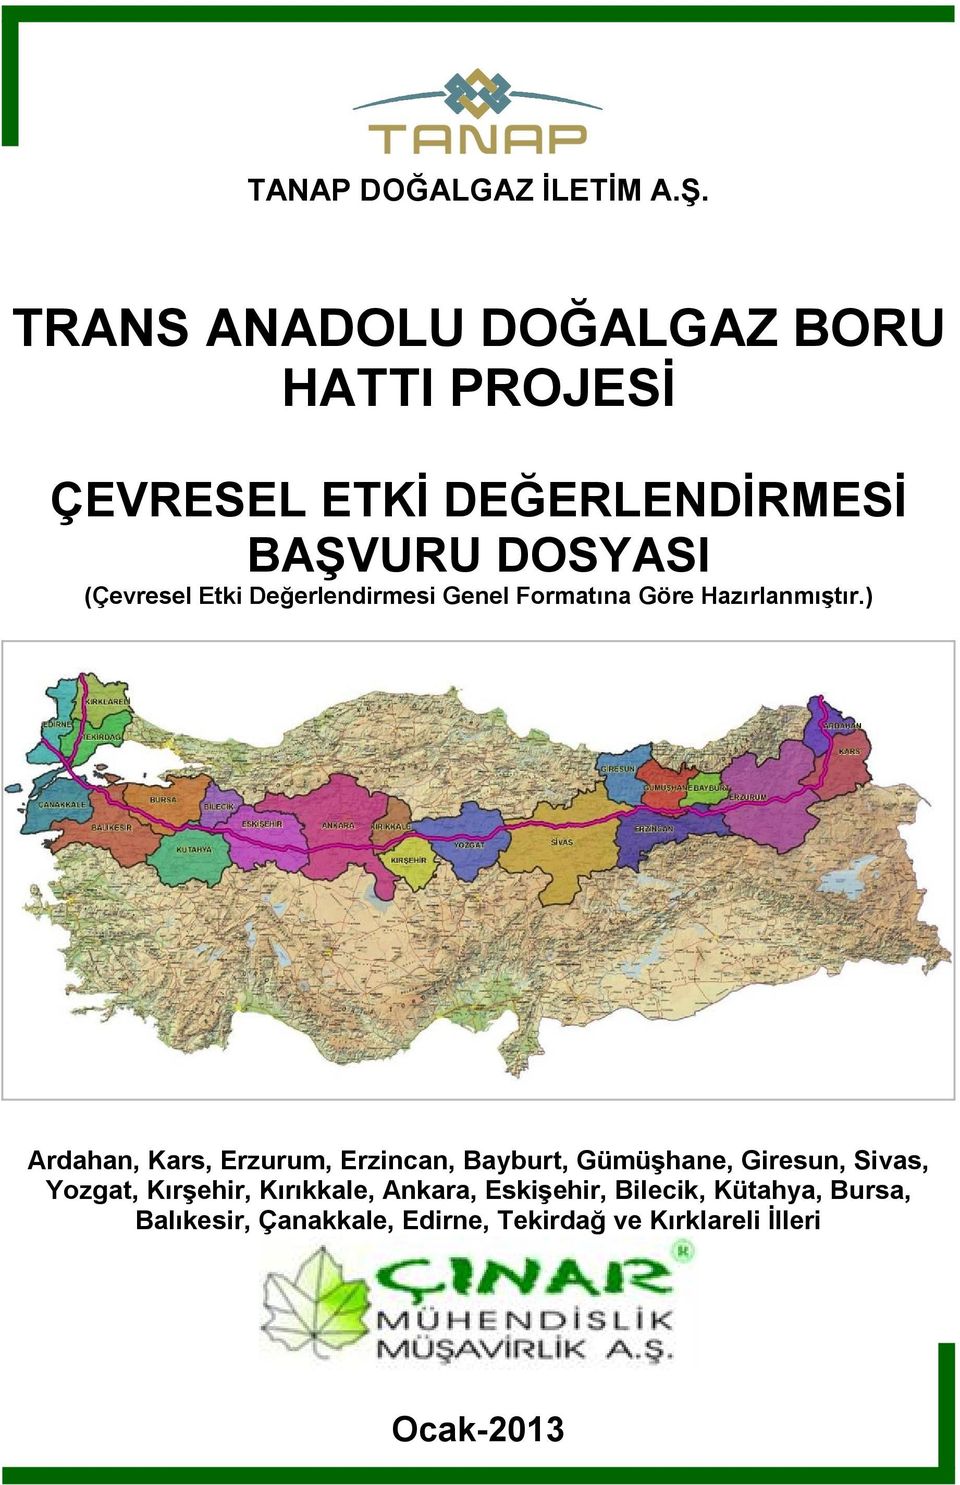 ) Ardahan, Kars, Erzurum, Erzincan, Bayburt, Gümüşhane, Giresun, Sivas, Yozgat, Kırşehir,